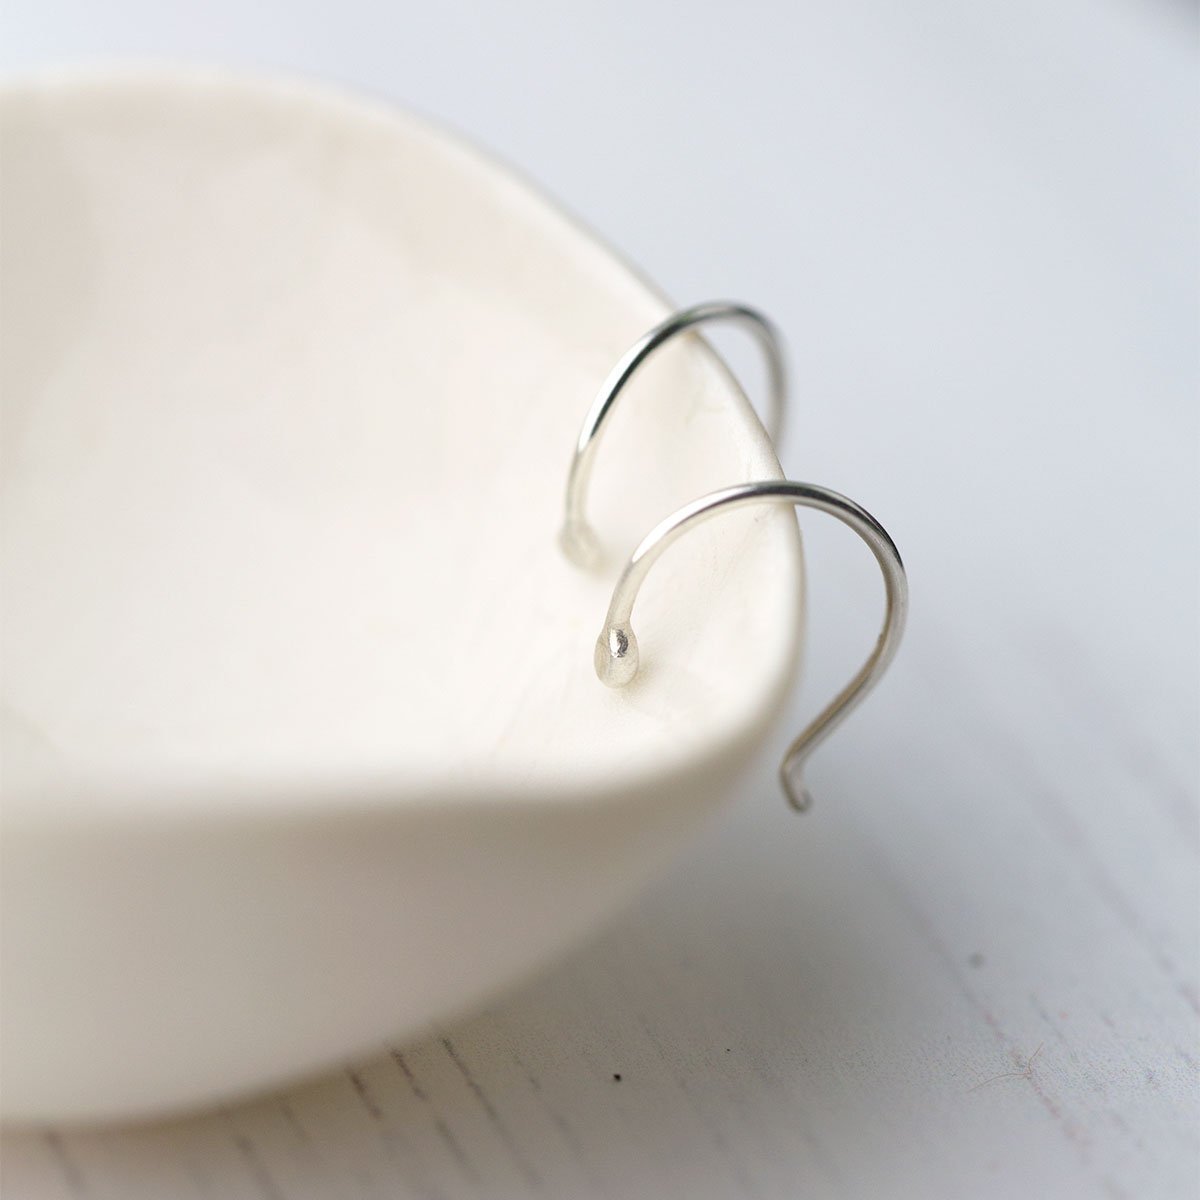 Mini Dew Drop Earrings - Sterling Silver - Handmade Jewelry by Burnish